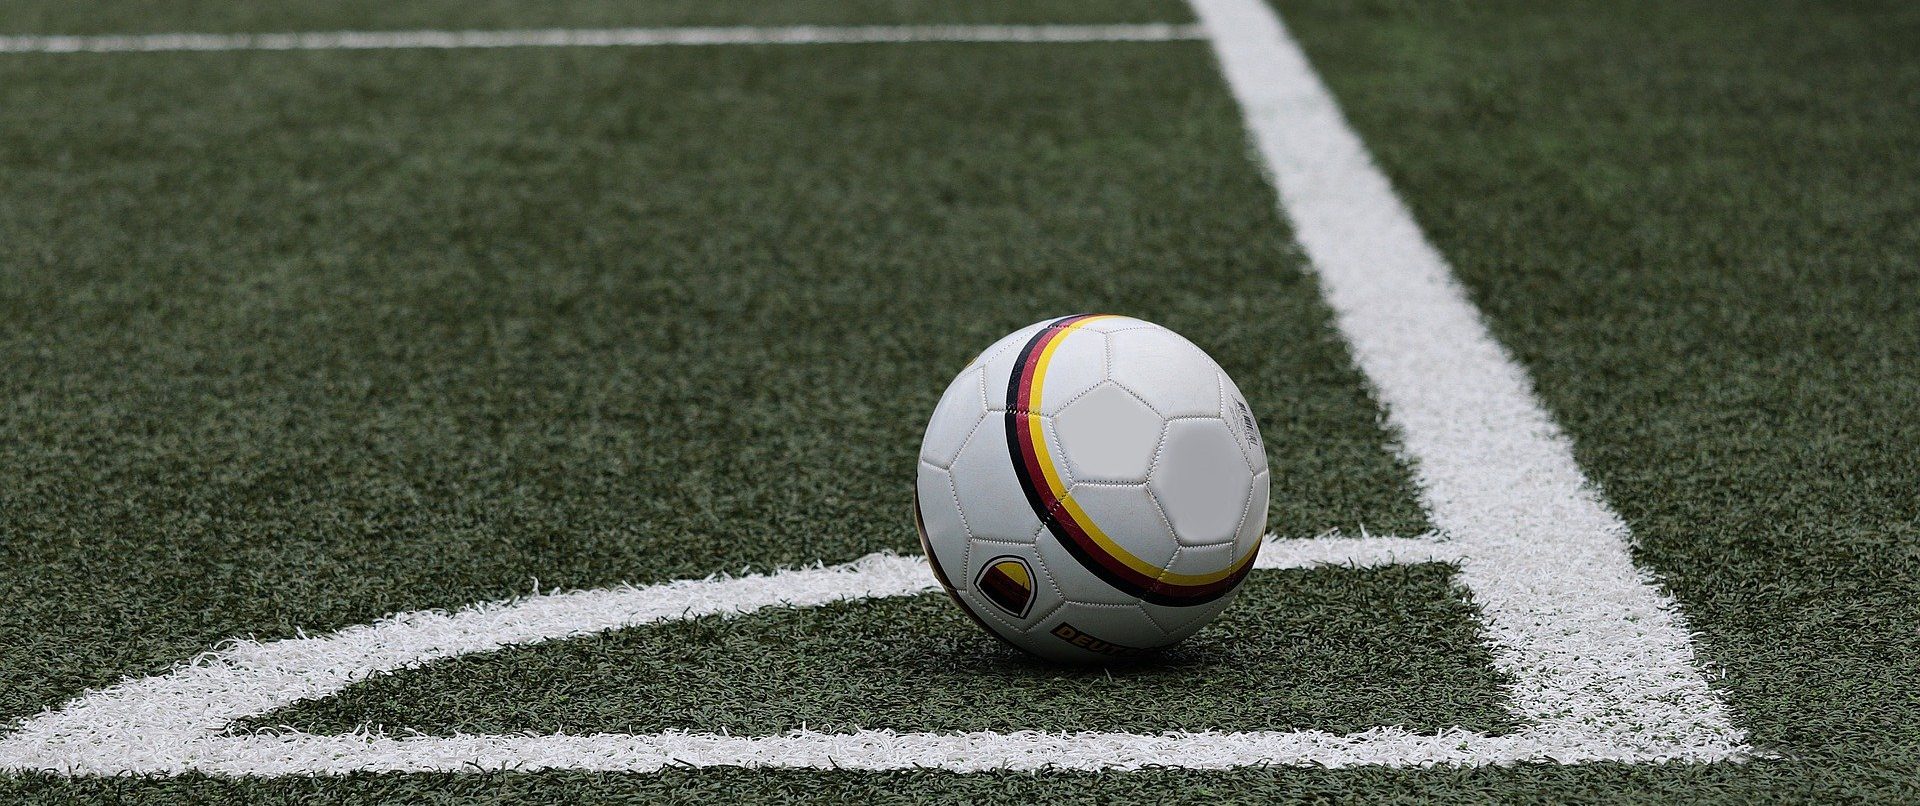 Дистанционное занятие по футболу организуют сотрудники филиала «Мещанский» учреждения «Центр». Фото: pixabay.com